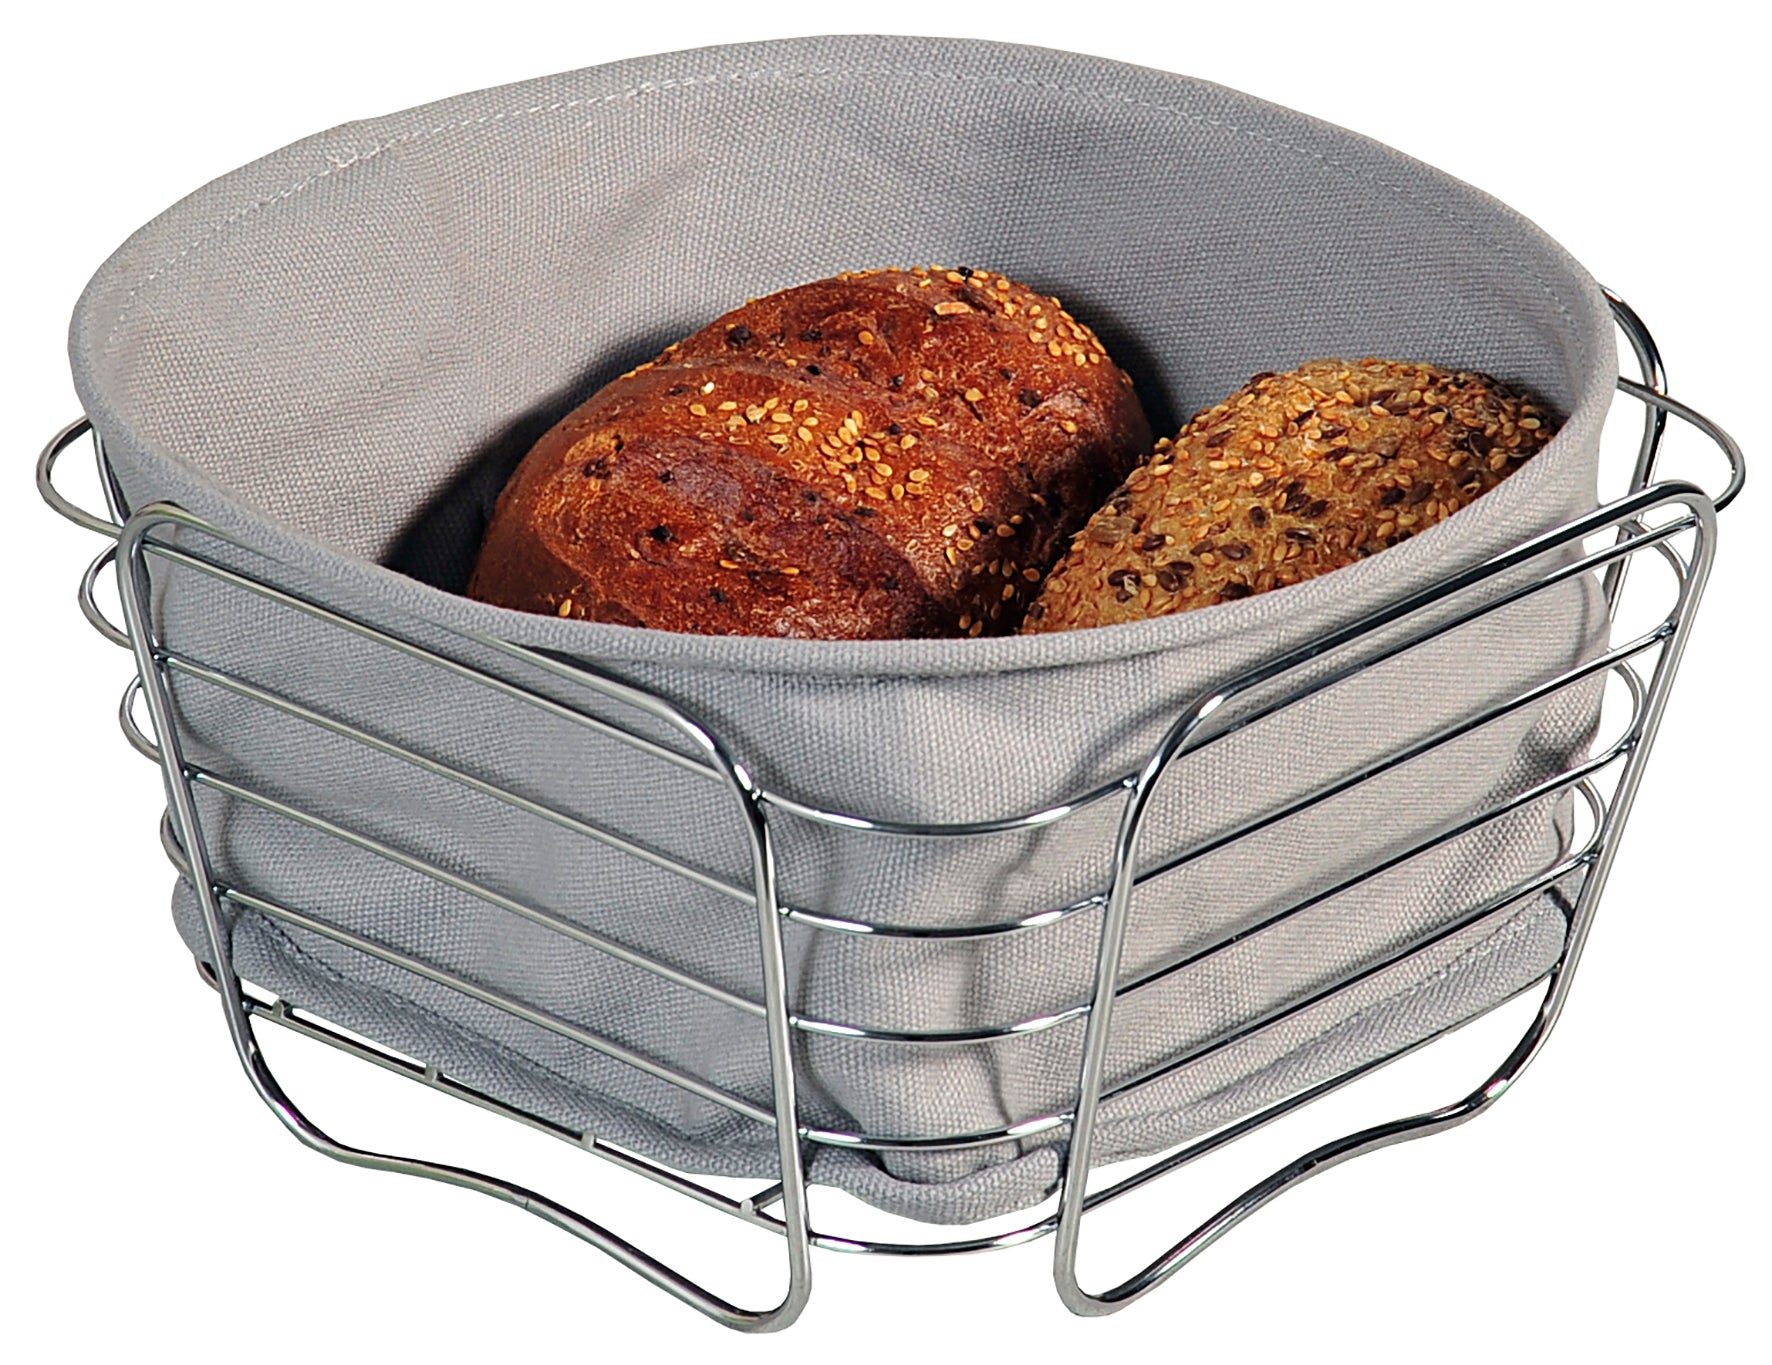 Brot- & Obstkorb - Metall - Textil: grau